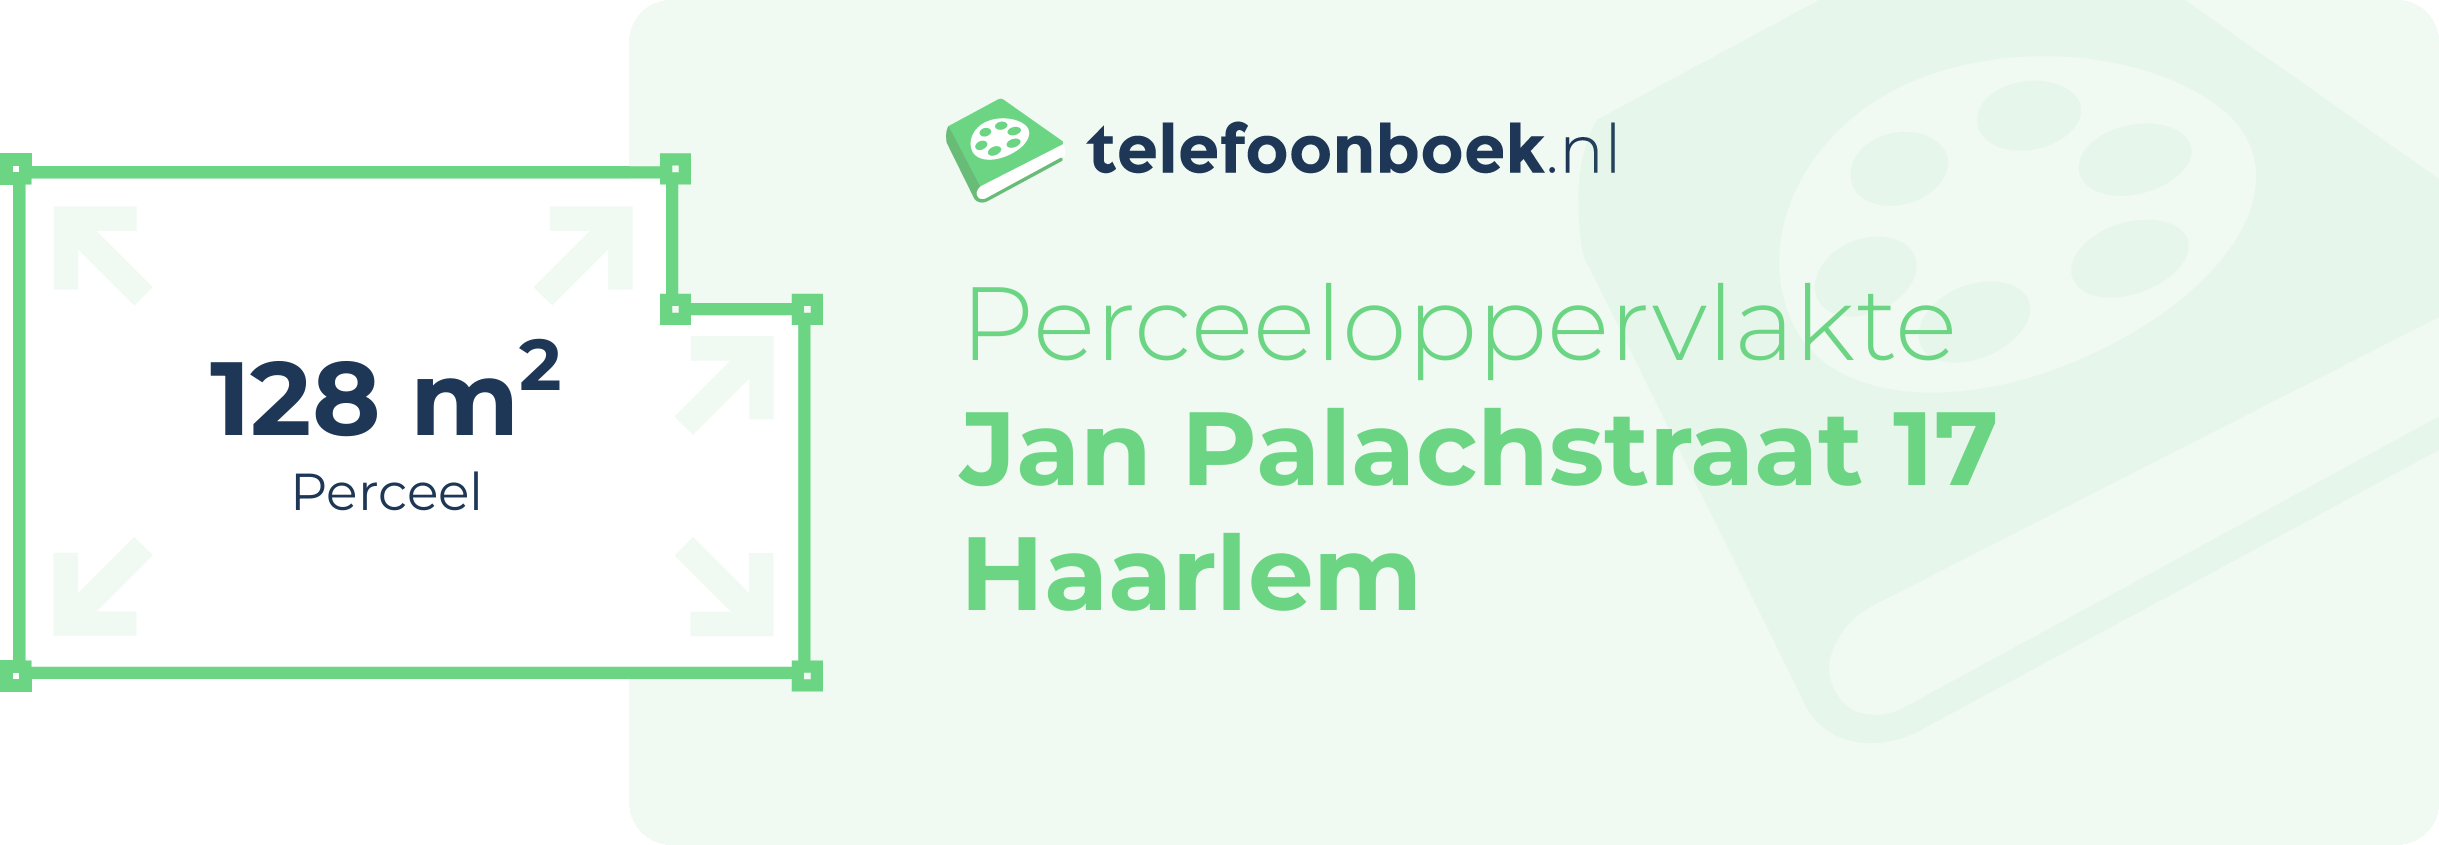 Perceeloppervlakte Jan Palachstraat 17 Haarlem